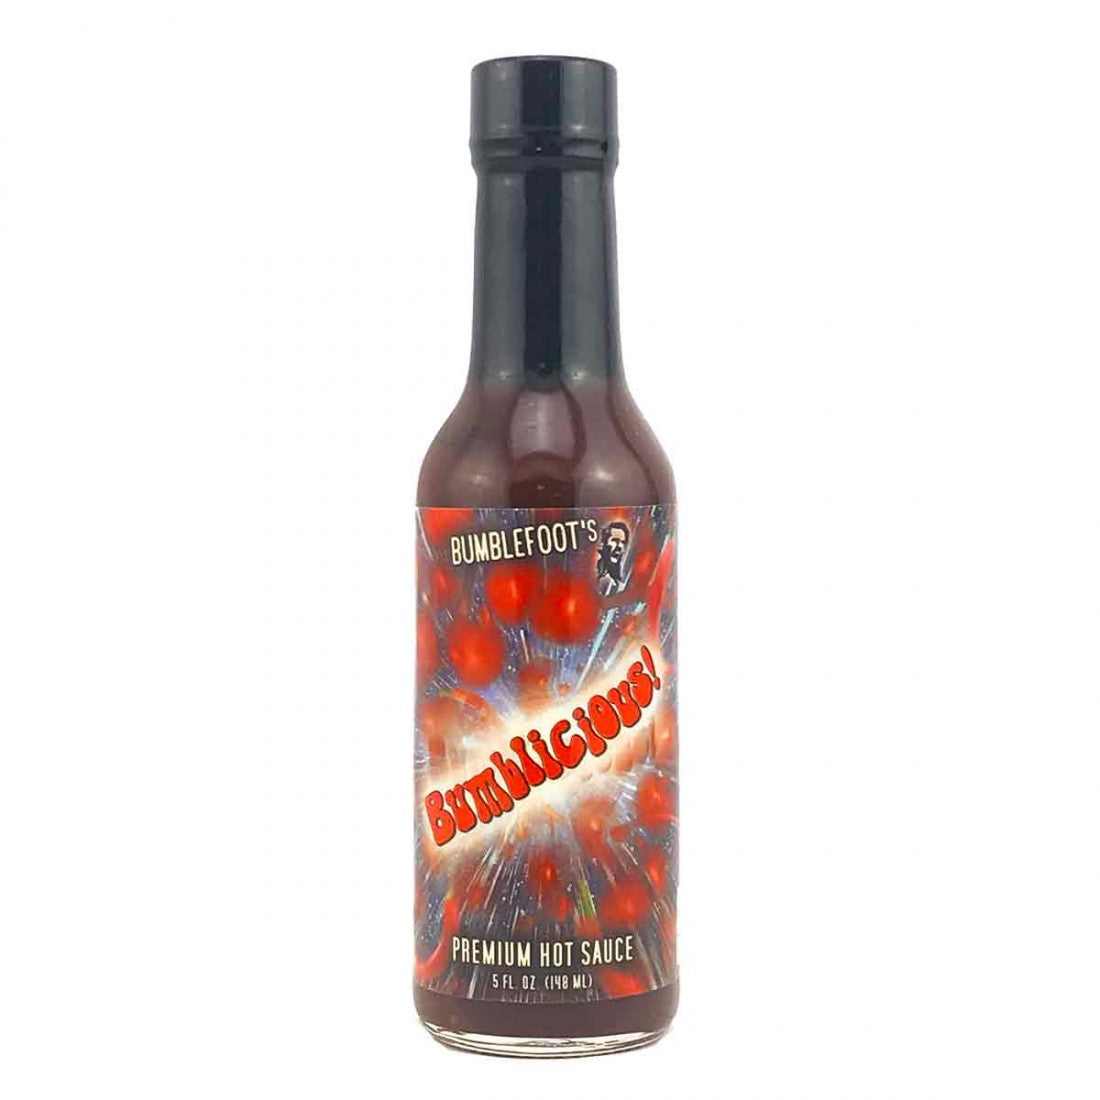 Bumblefoot's Bumblicious! Hot Sauce 5oz (148ml)